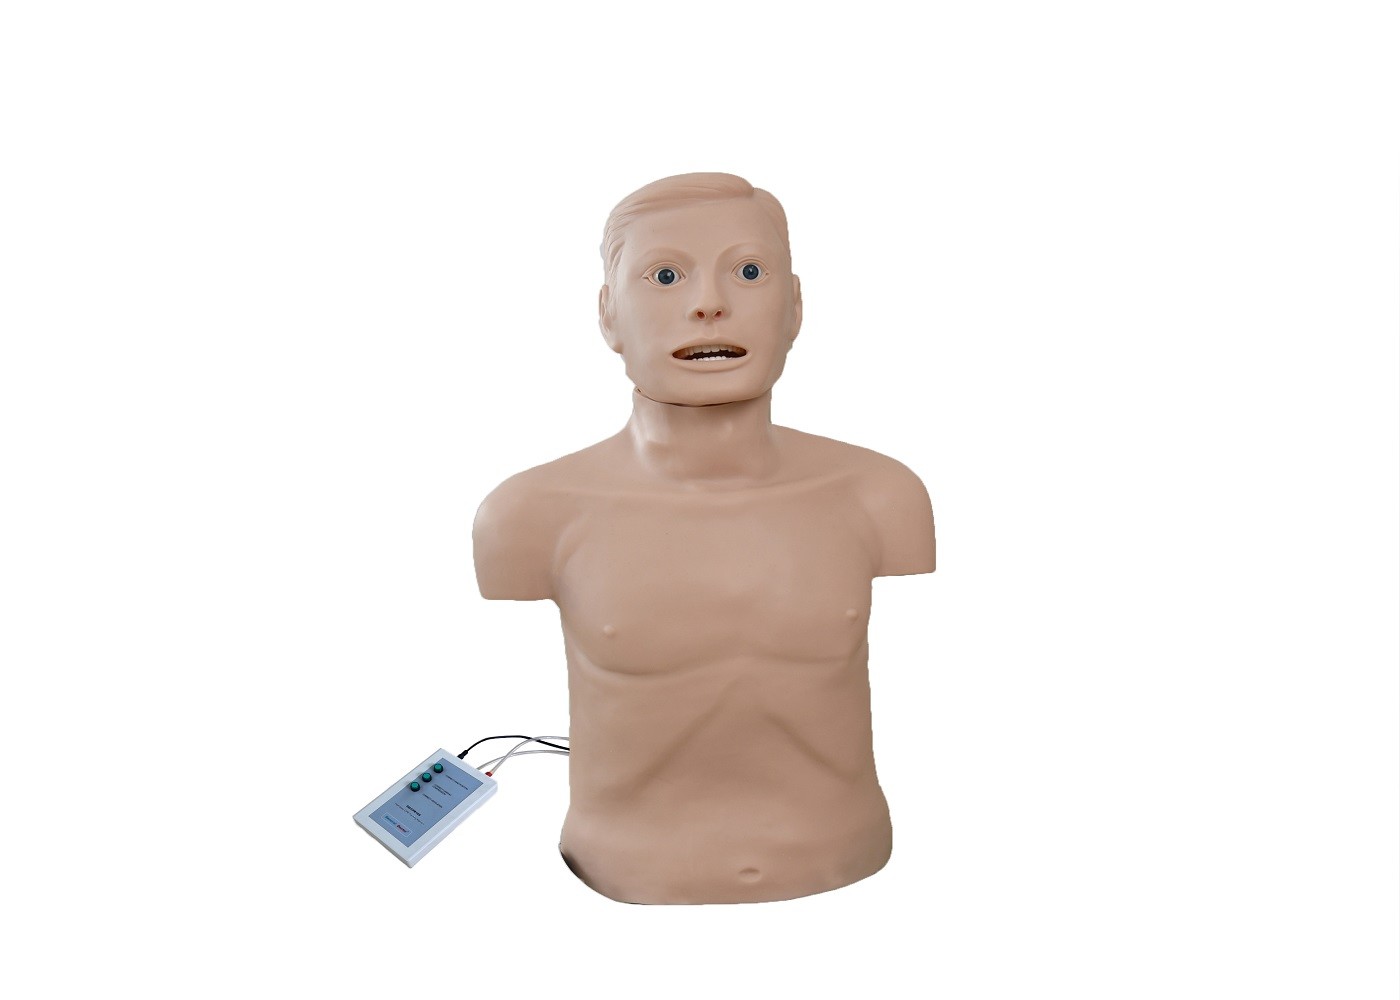 Erwachsene halbe Männchen Körper-Intubation CPR-erster Hilfe